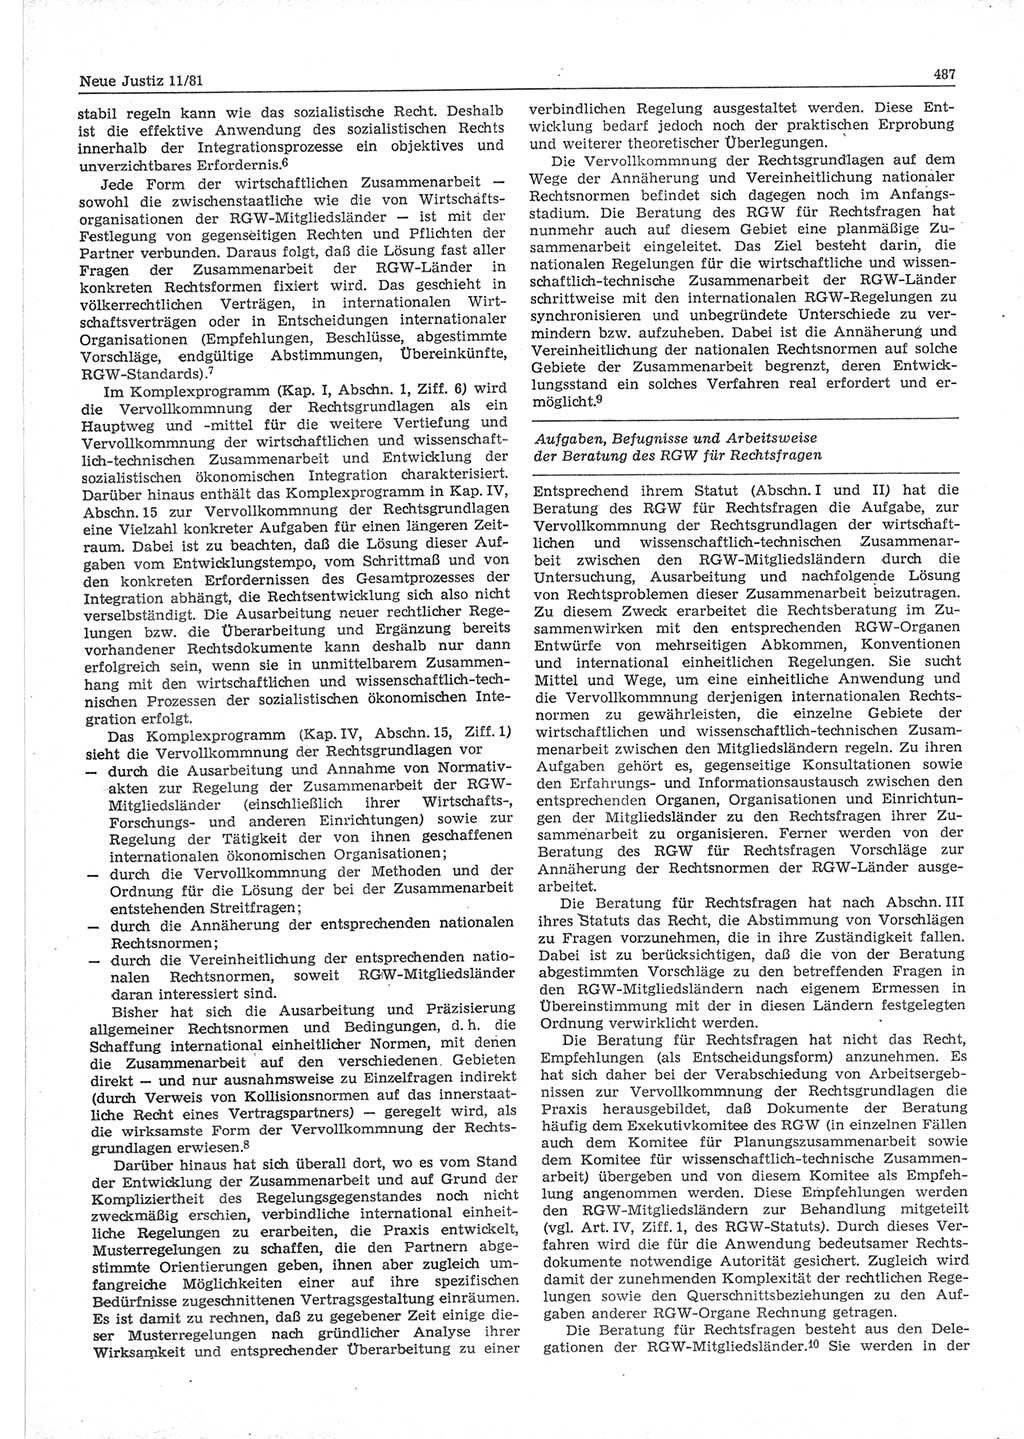 Neue Justiz (NJ), Zeitschrift für sozialistisches Recht und Gesetzlichkeit [Deutsche Demokratische Republik (DDR)], 35. Jahrgang 1981, Seite 487 (NJ DDR 1981, S. 487)